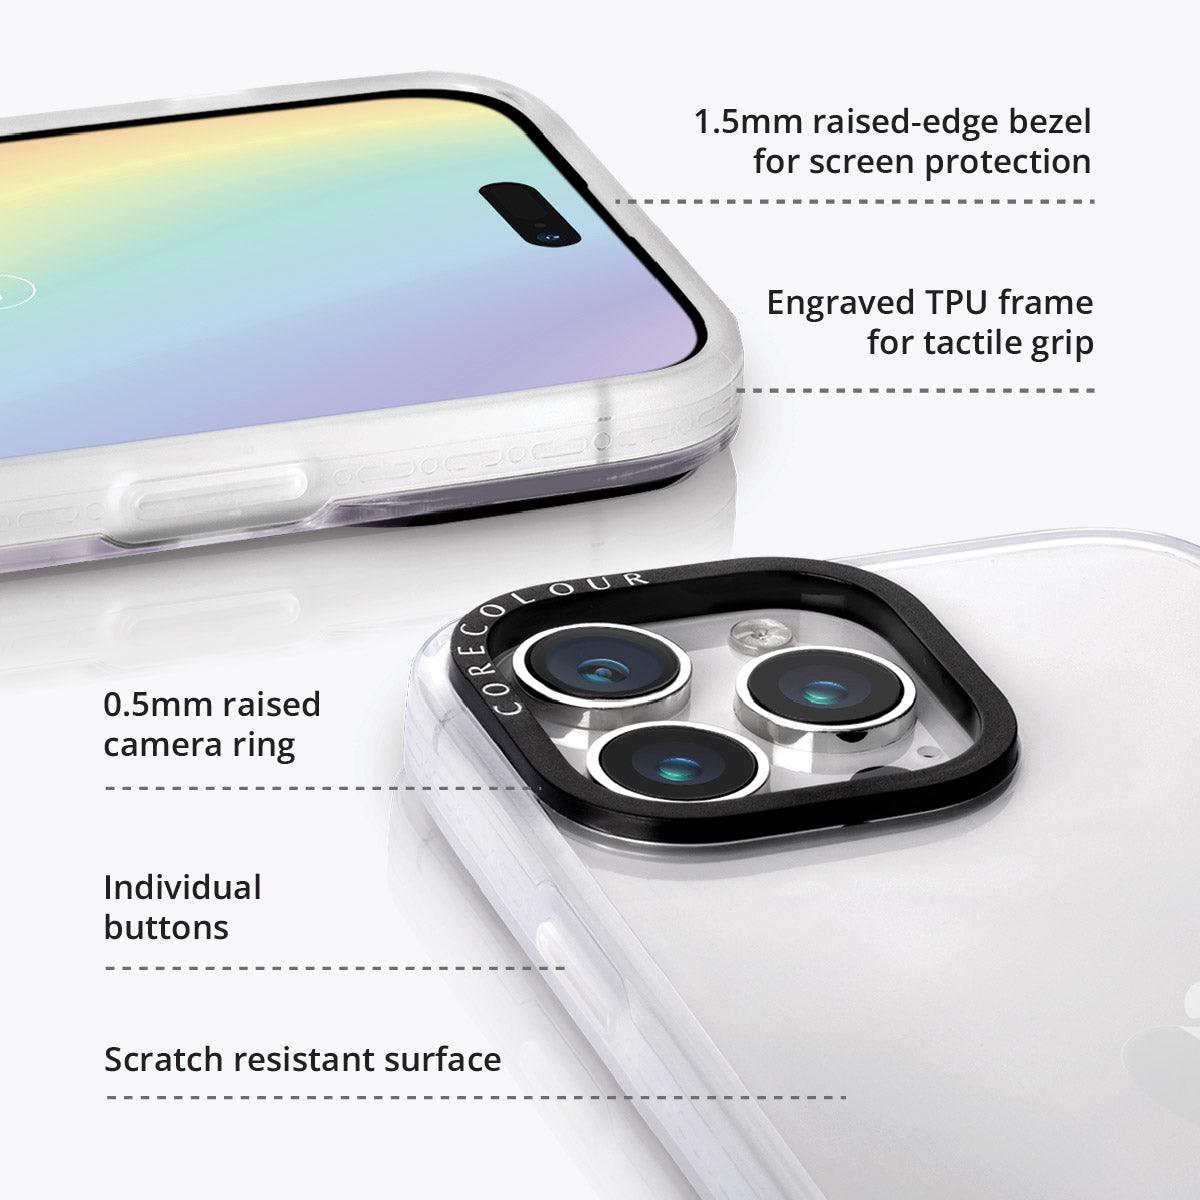 iPhone 12 Pro Lilac Picnic Phone Case - CORECOLOUR